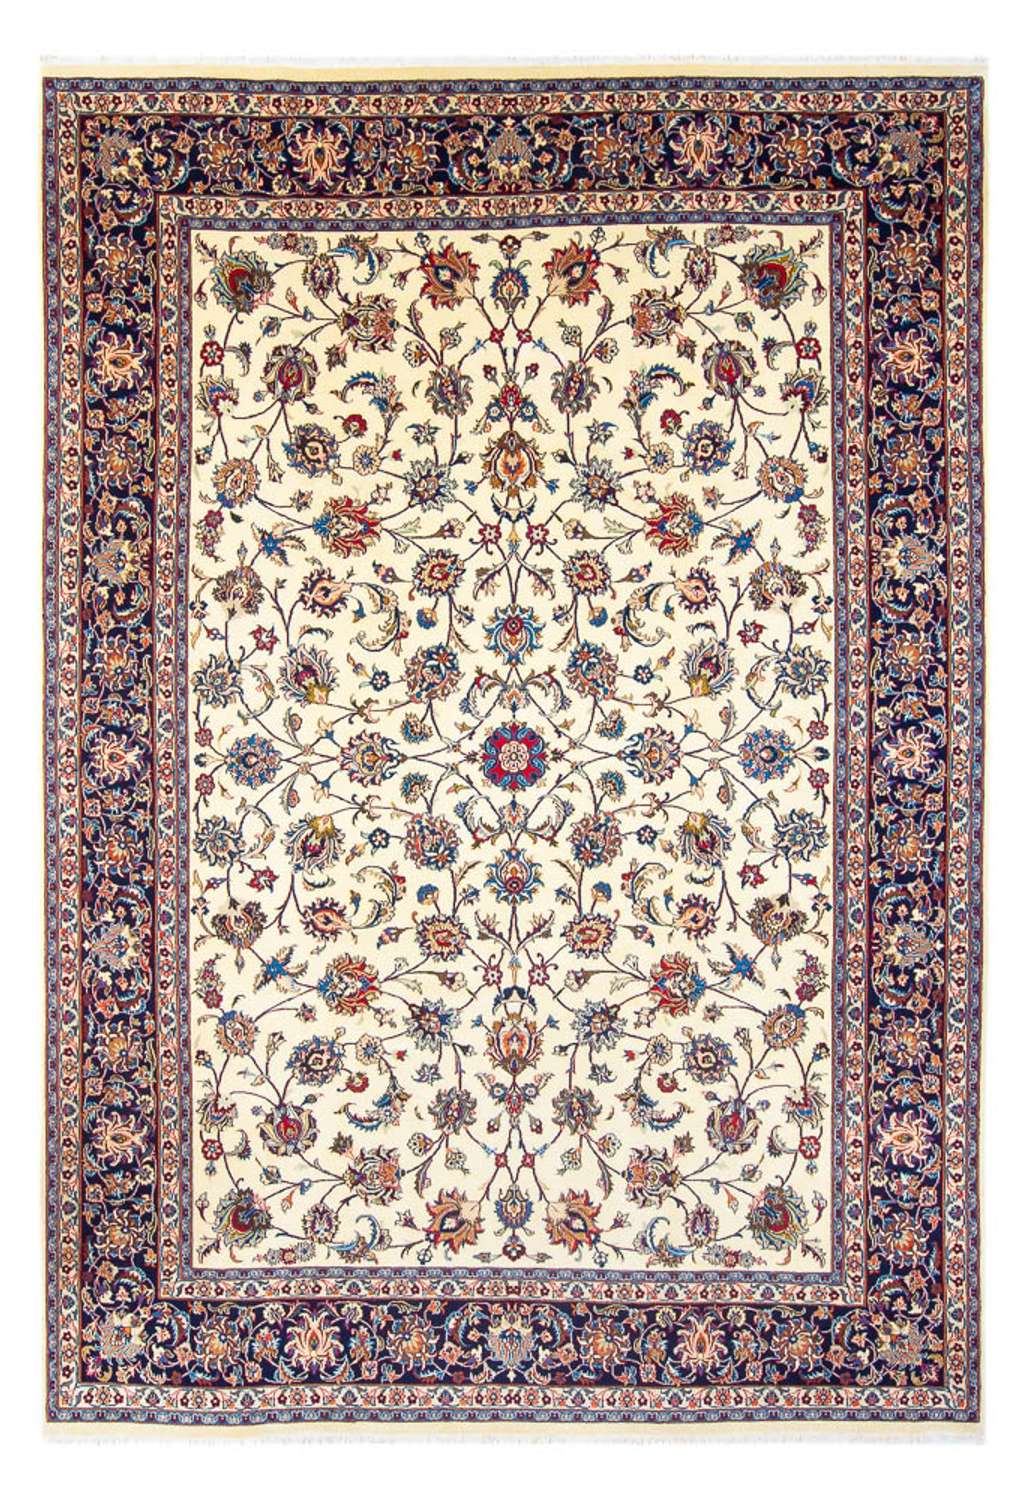 Perský koberec - Klasický - 342 x 248 cm - krémová